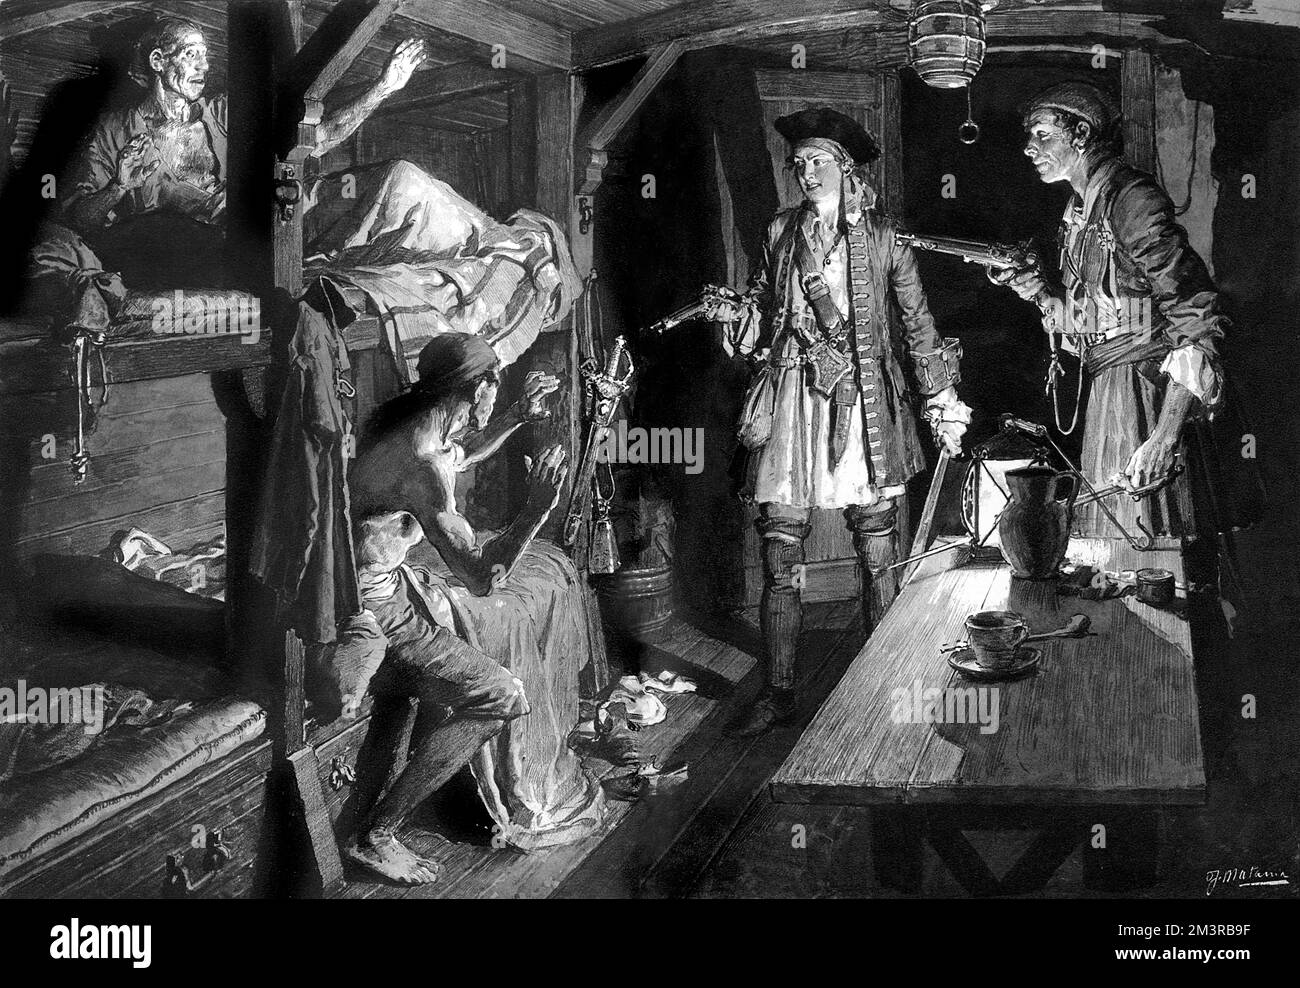 Anne Bonny, également connue sous le nom de Bonney (vers 1700-1782), célèbre femelle buccaneer, photographiée dans la cabine d'un navire pointant son pistolet vers deux marins peu méfiants dans leurs couchettes sous le pont. Date: c.1725 Banque D'Images